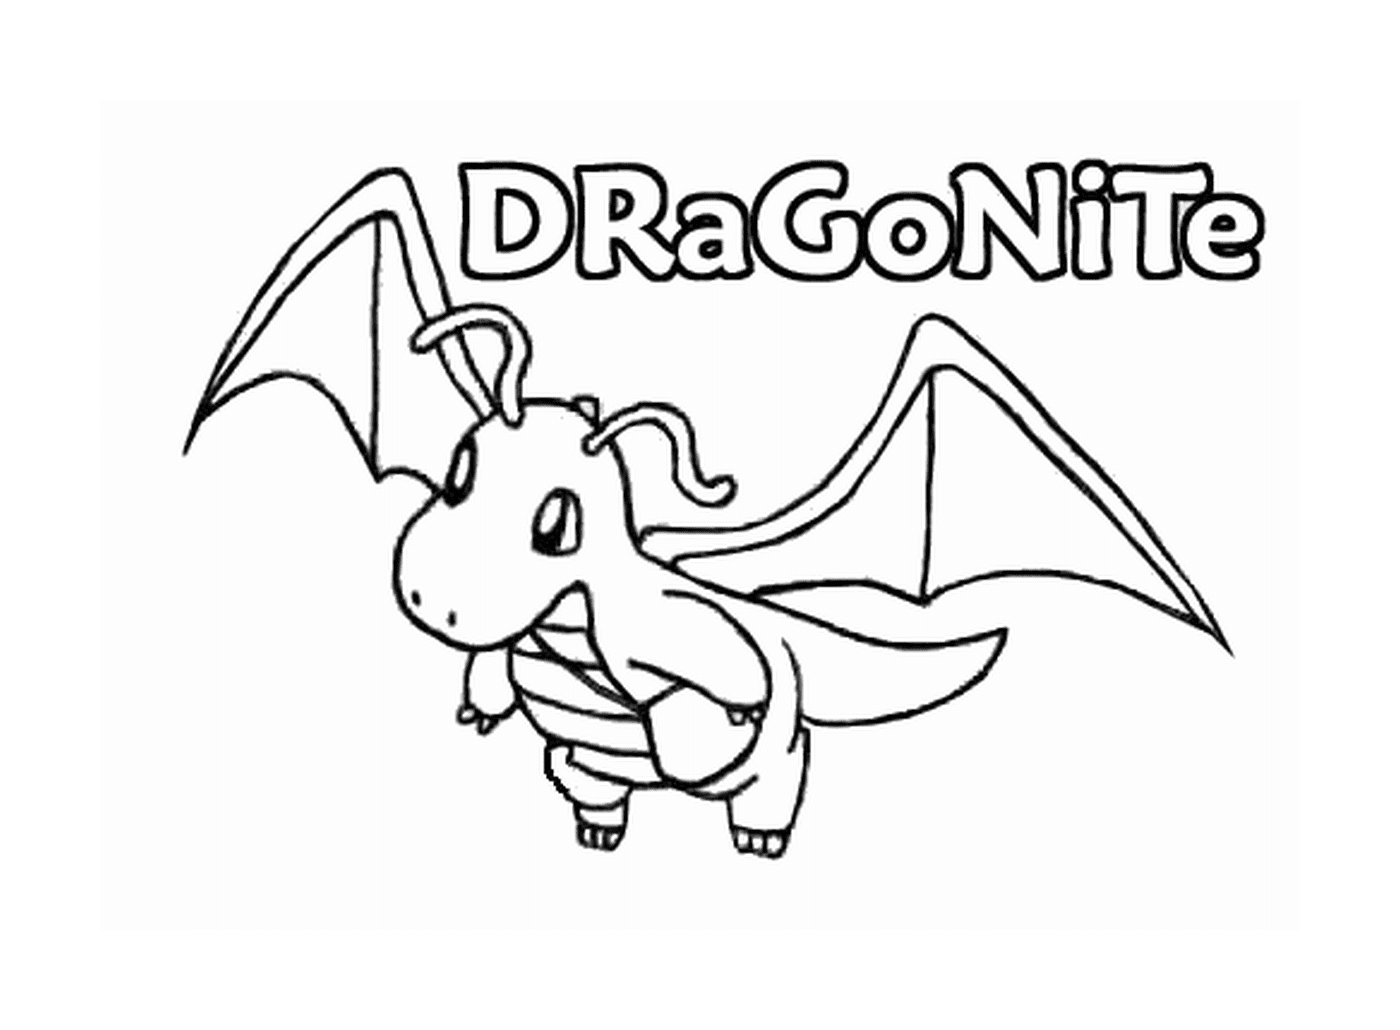  Dragonite: potente drago volante 